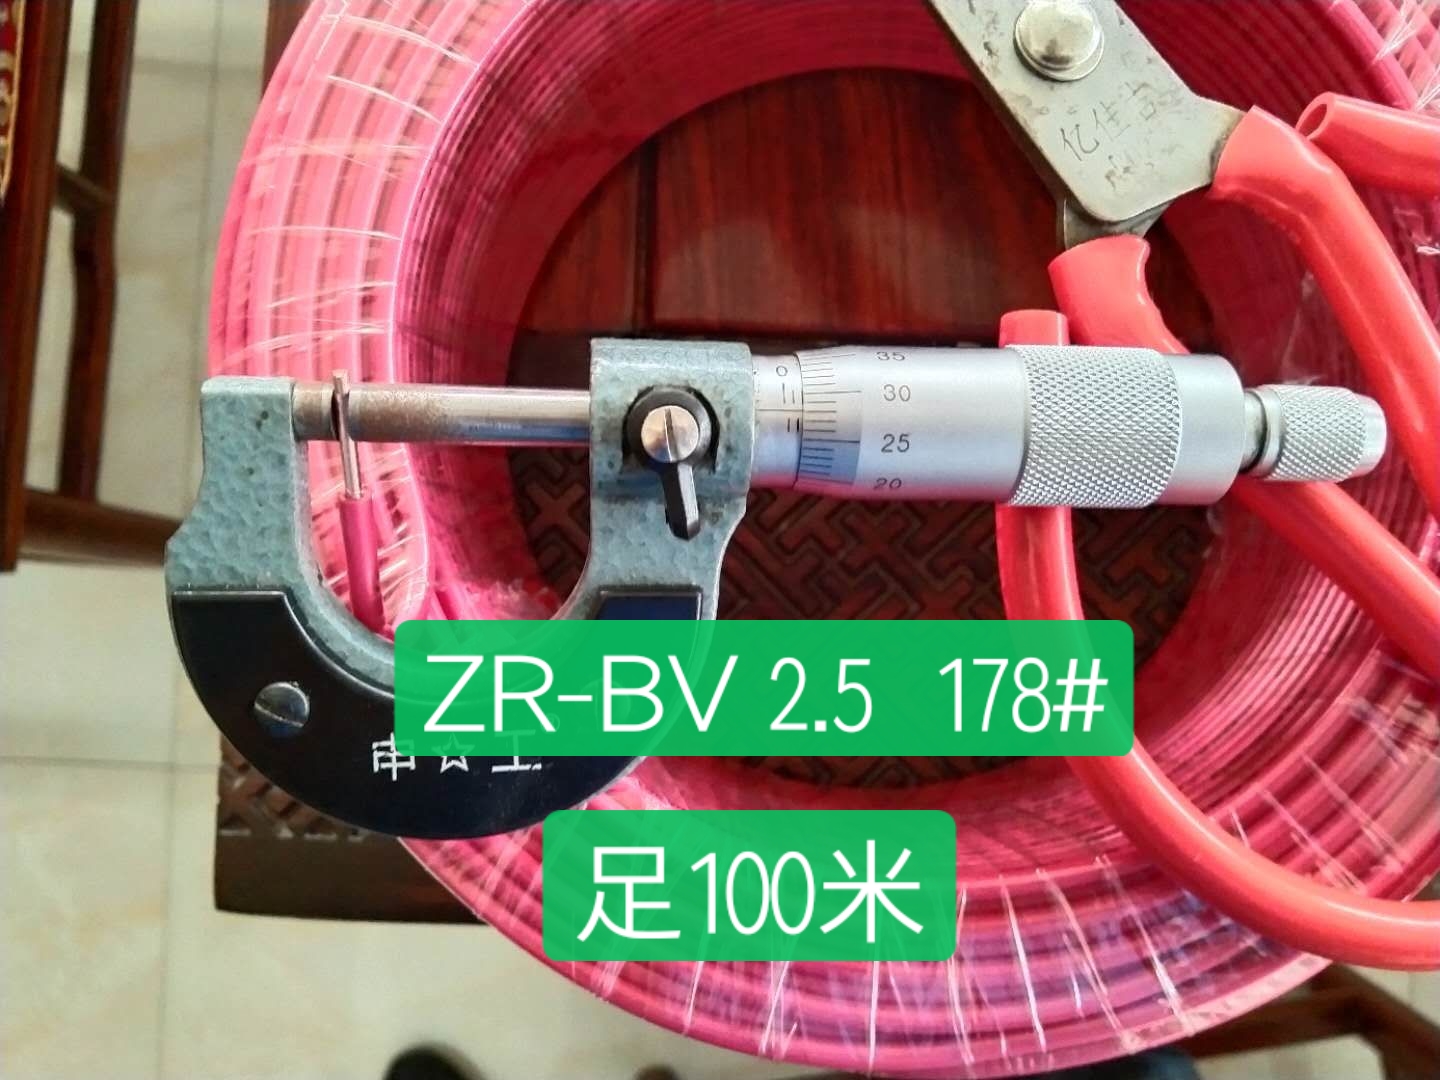 ZR-BV  2.5 178# 足100米